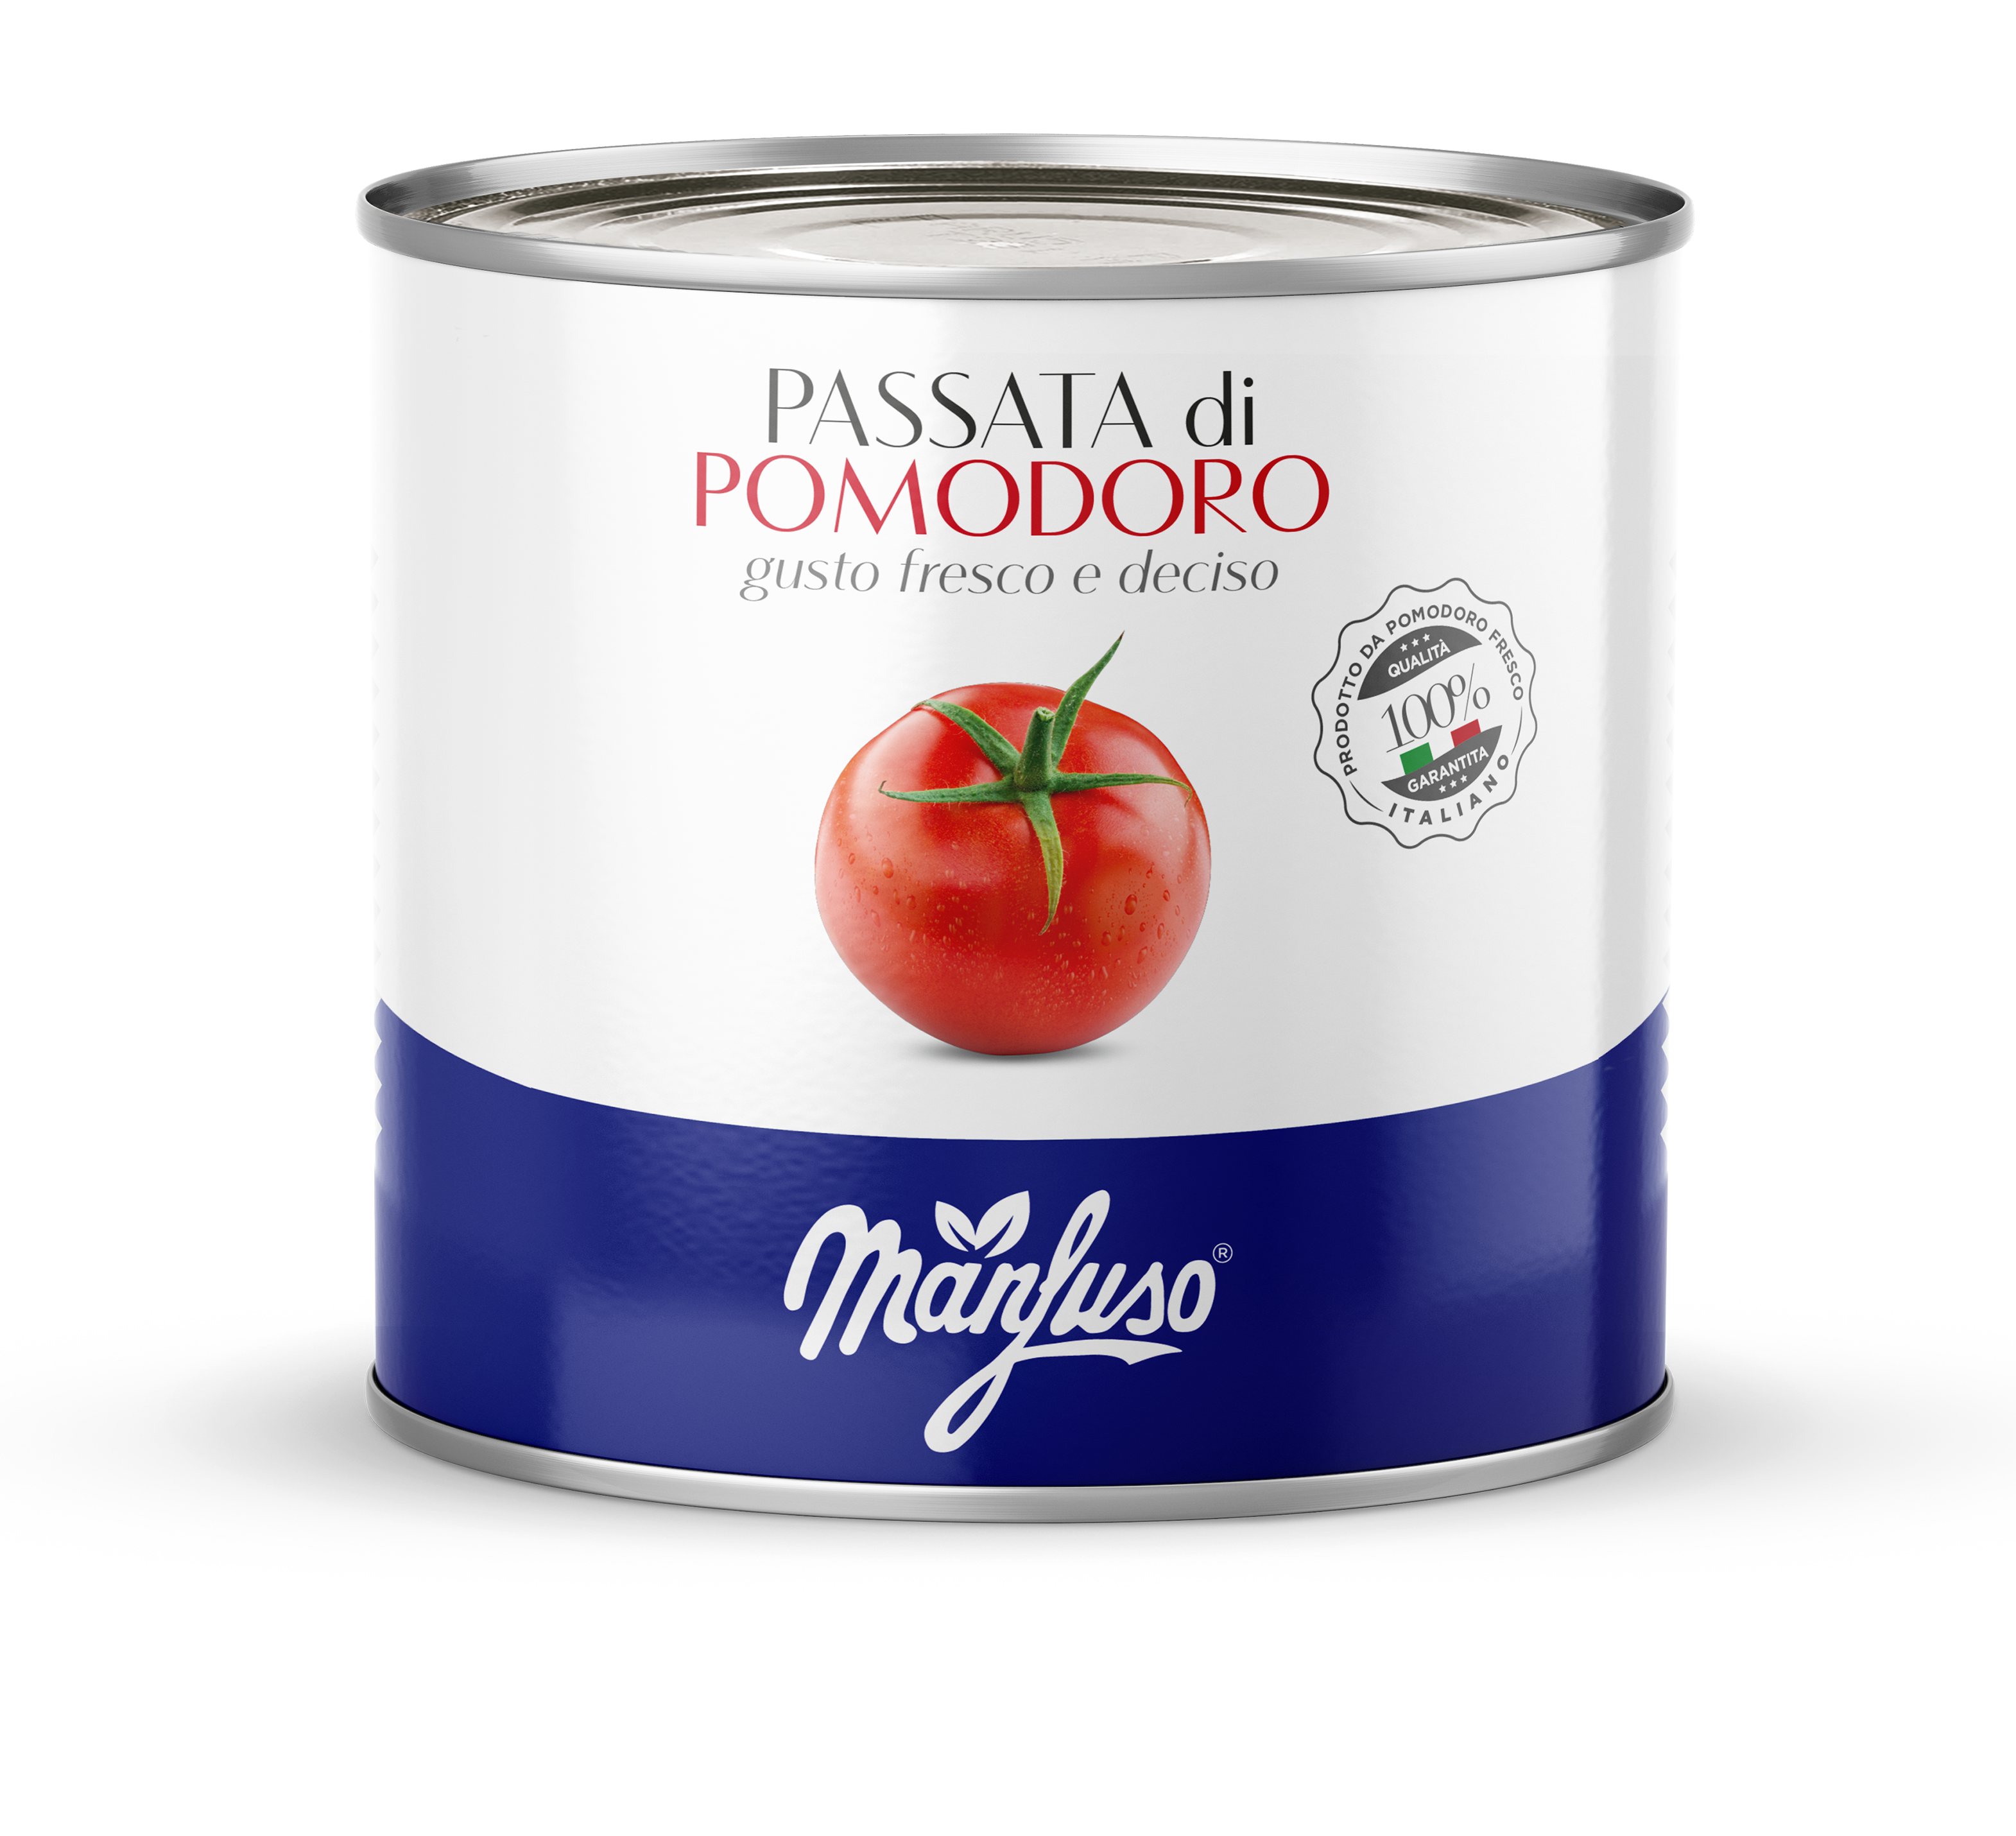 Passata di pomodoro 2,5 kg tradizionale - Conserve Manfuso®